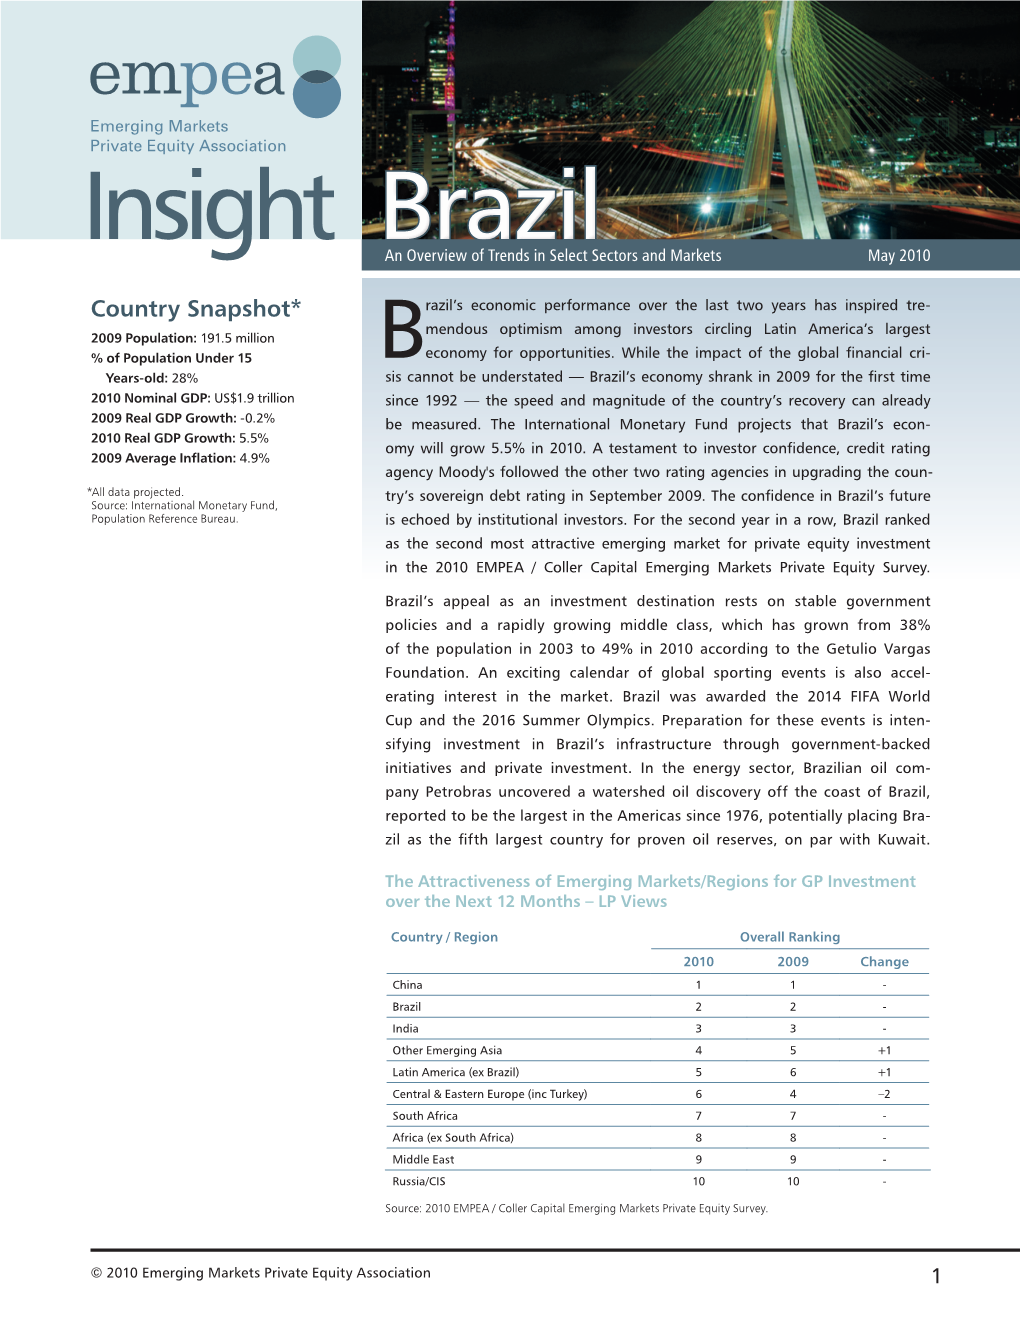 Brazil Insight